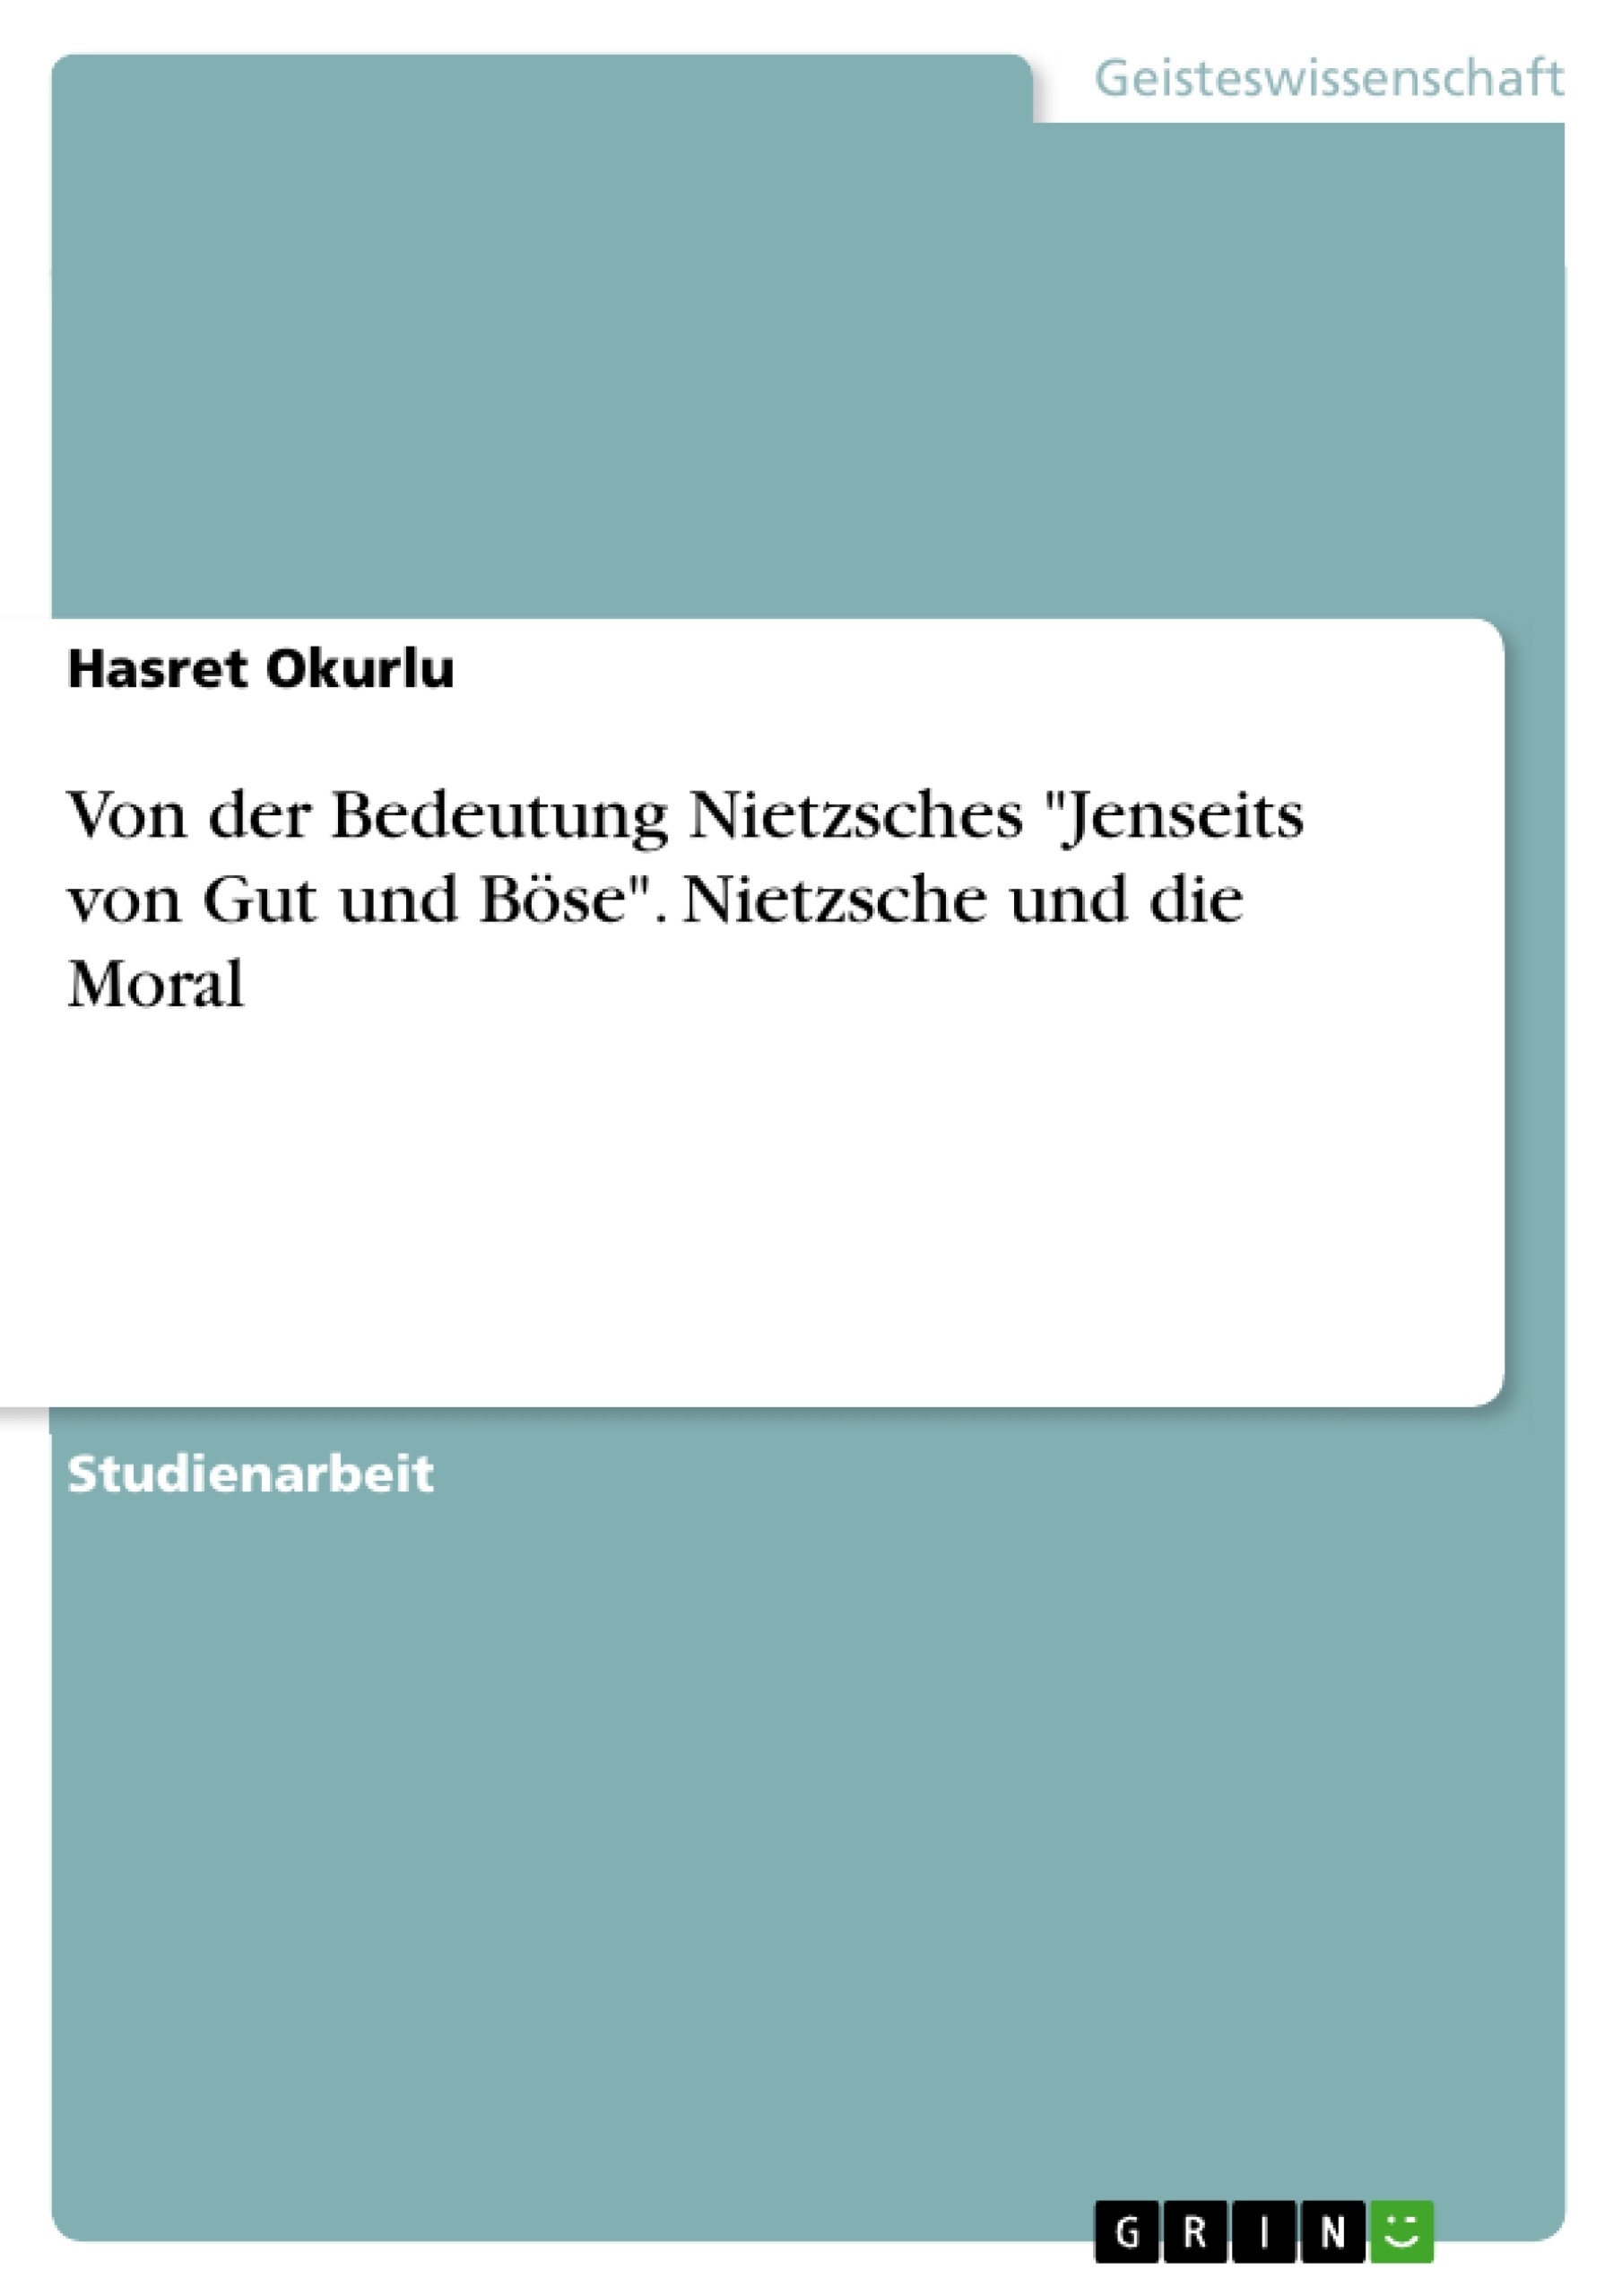 Titre: Von der Bedeutung Nietzsches "Jenseits von Gut und Böse". Nietzsche und die Moral